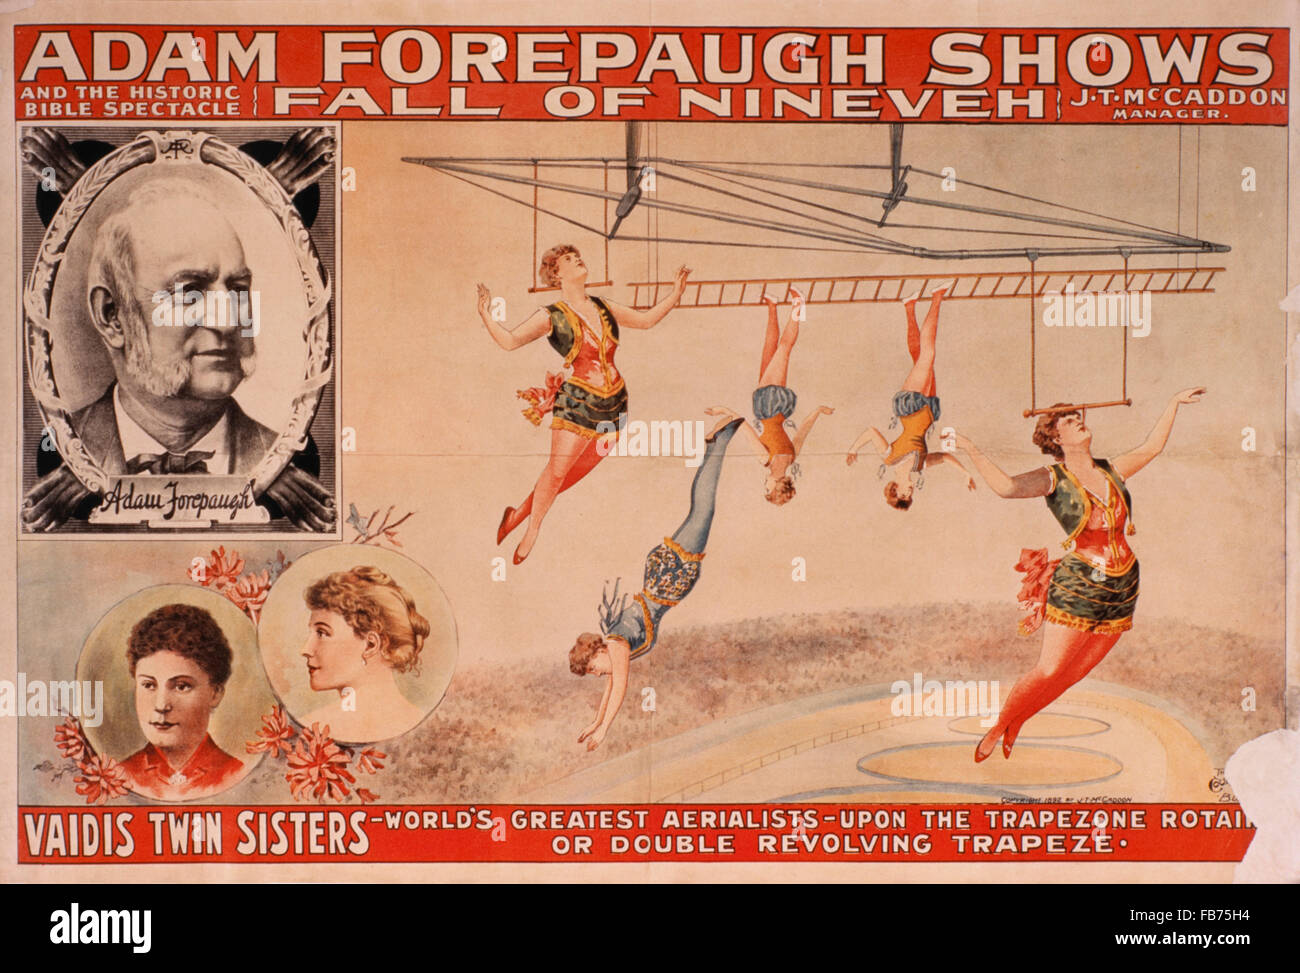 Adam Forepaugh Shows und die historische Bibel Spektakel, Sturz von Ninive, Vaidis Zwillingsschwestern, weltweit größte Luftakrobaten, Zirkus-Plakat, ca. 1898 Stockfoto